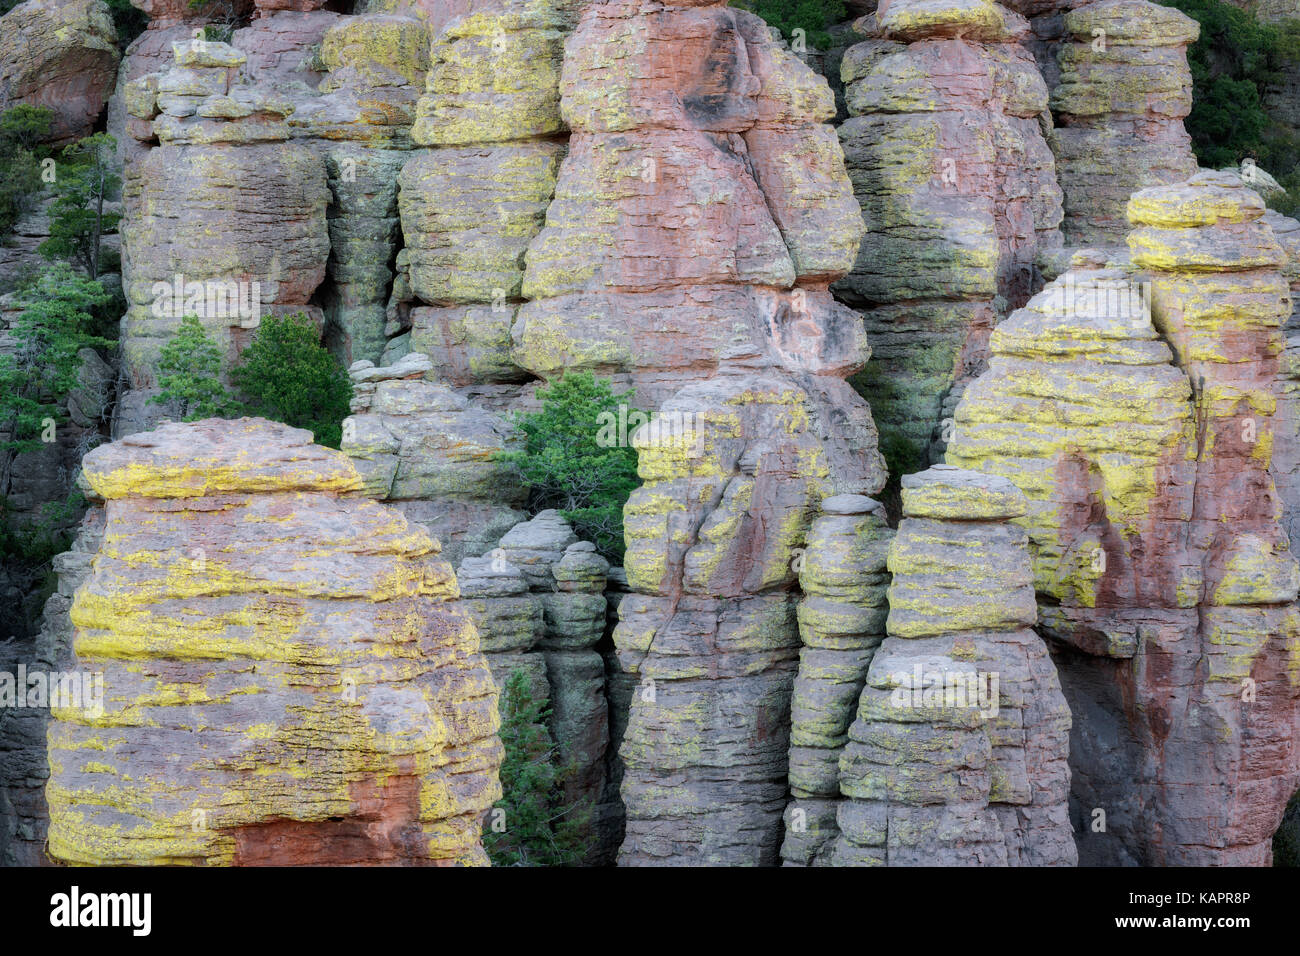 Innumerevoli lichen coperto formazioni rocciose e le hoodoos si trovano in tutta se l'Arizona Chiricahua National Monument. Foto Stock